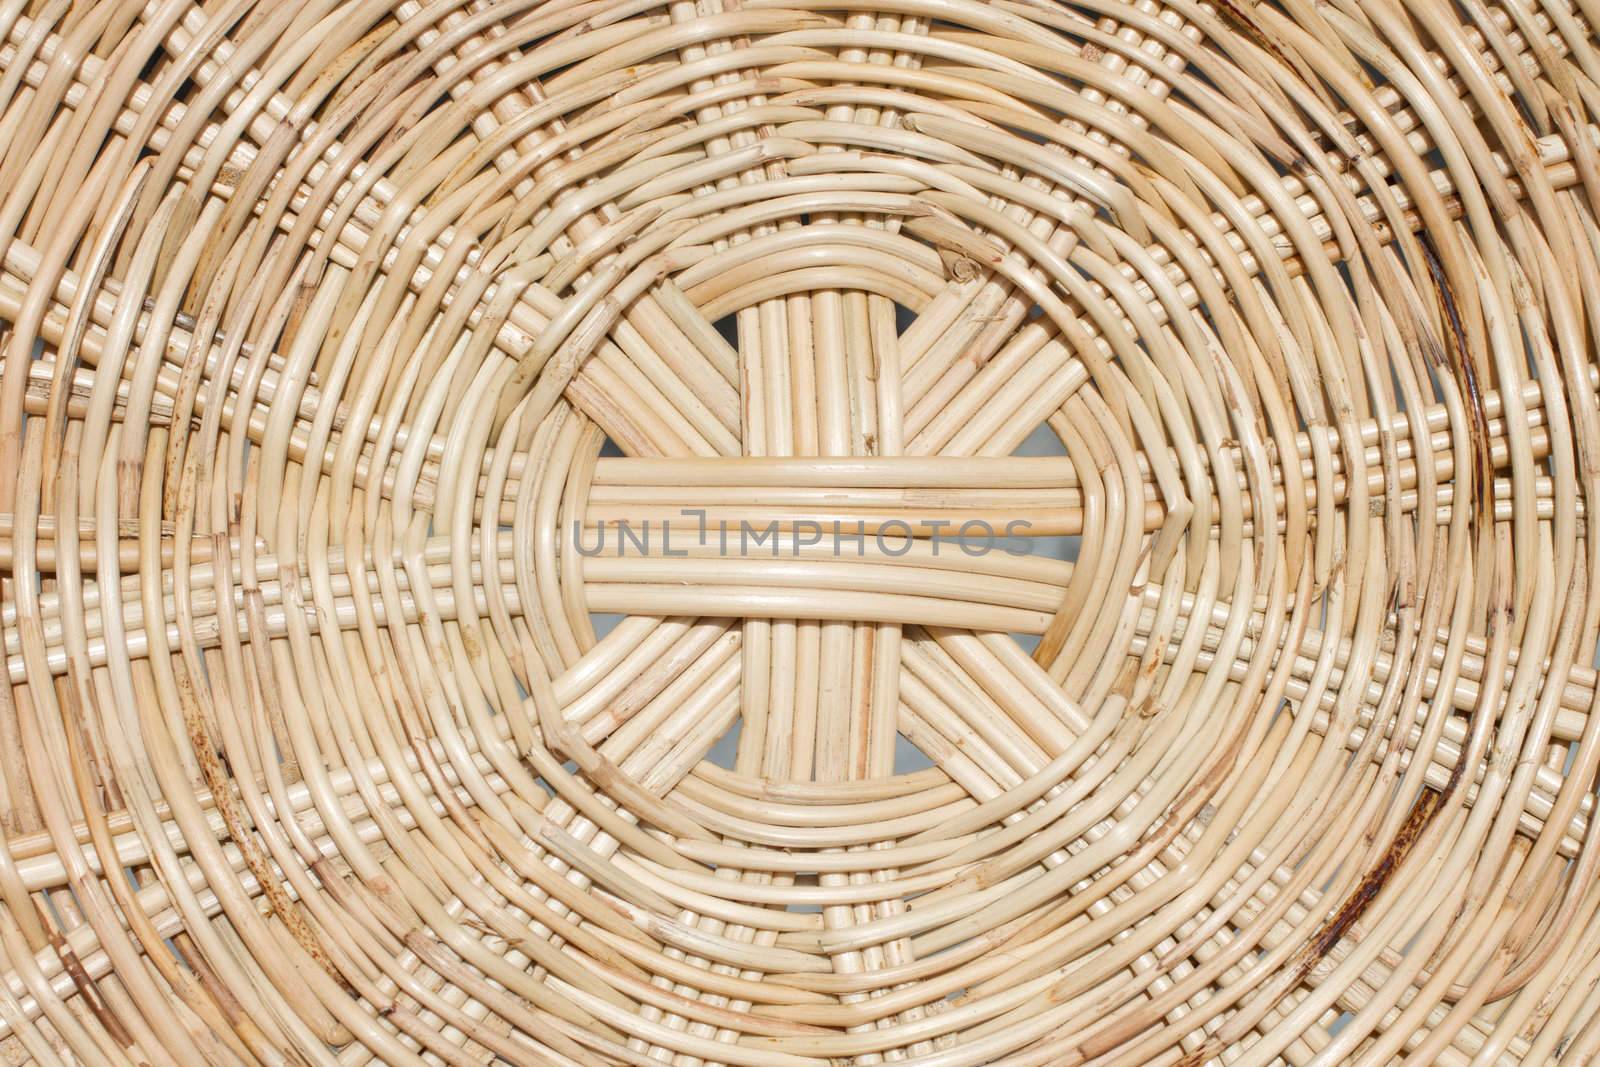 Hand make rattan basket by Suriyaphoto